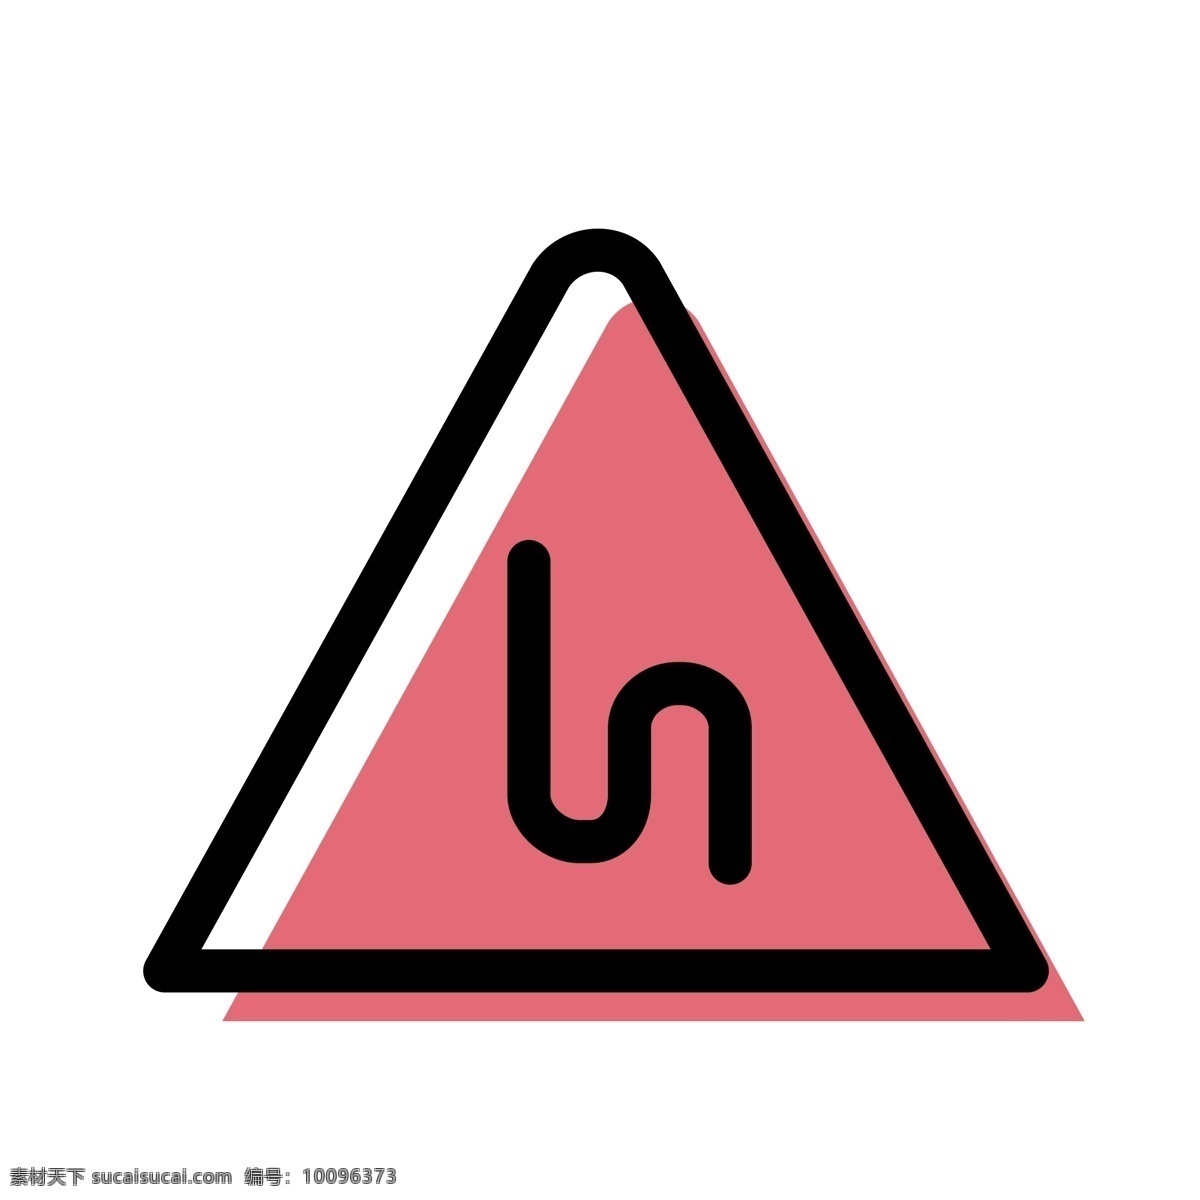 弯路图标 弯路 s弯路 三角标 提示牌 扁平化ui ui图标 手机图标 界面ui 网页ui h5图标